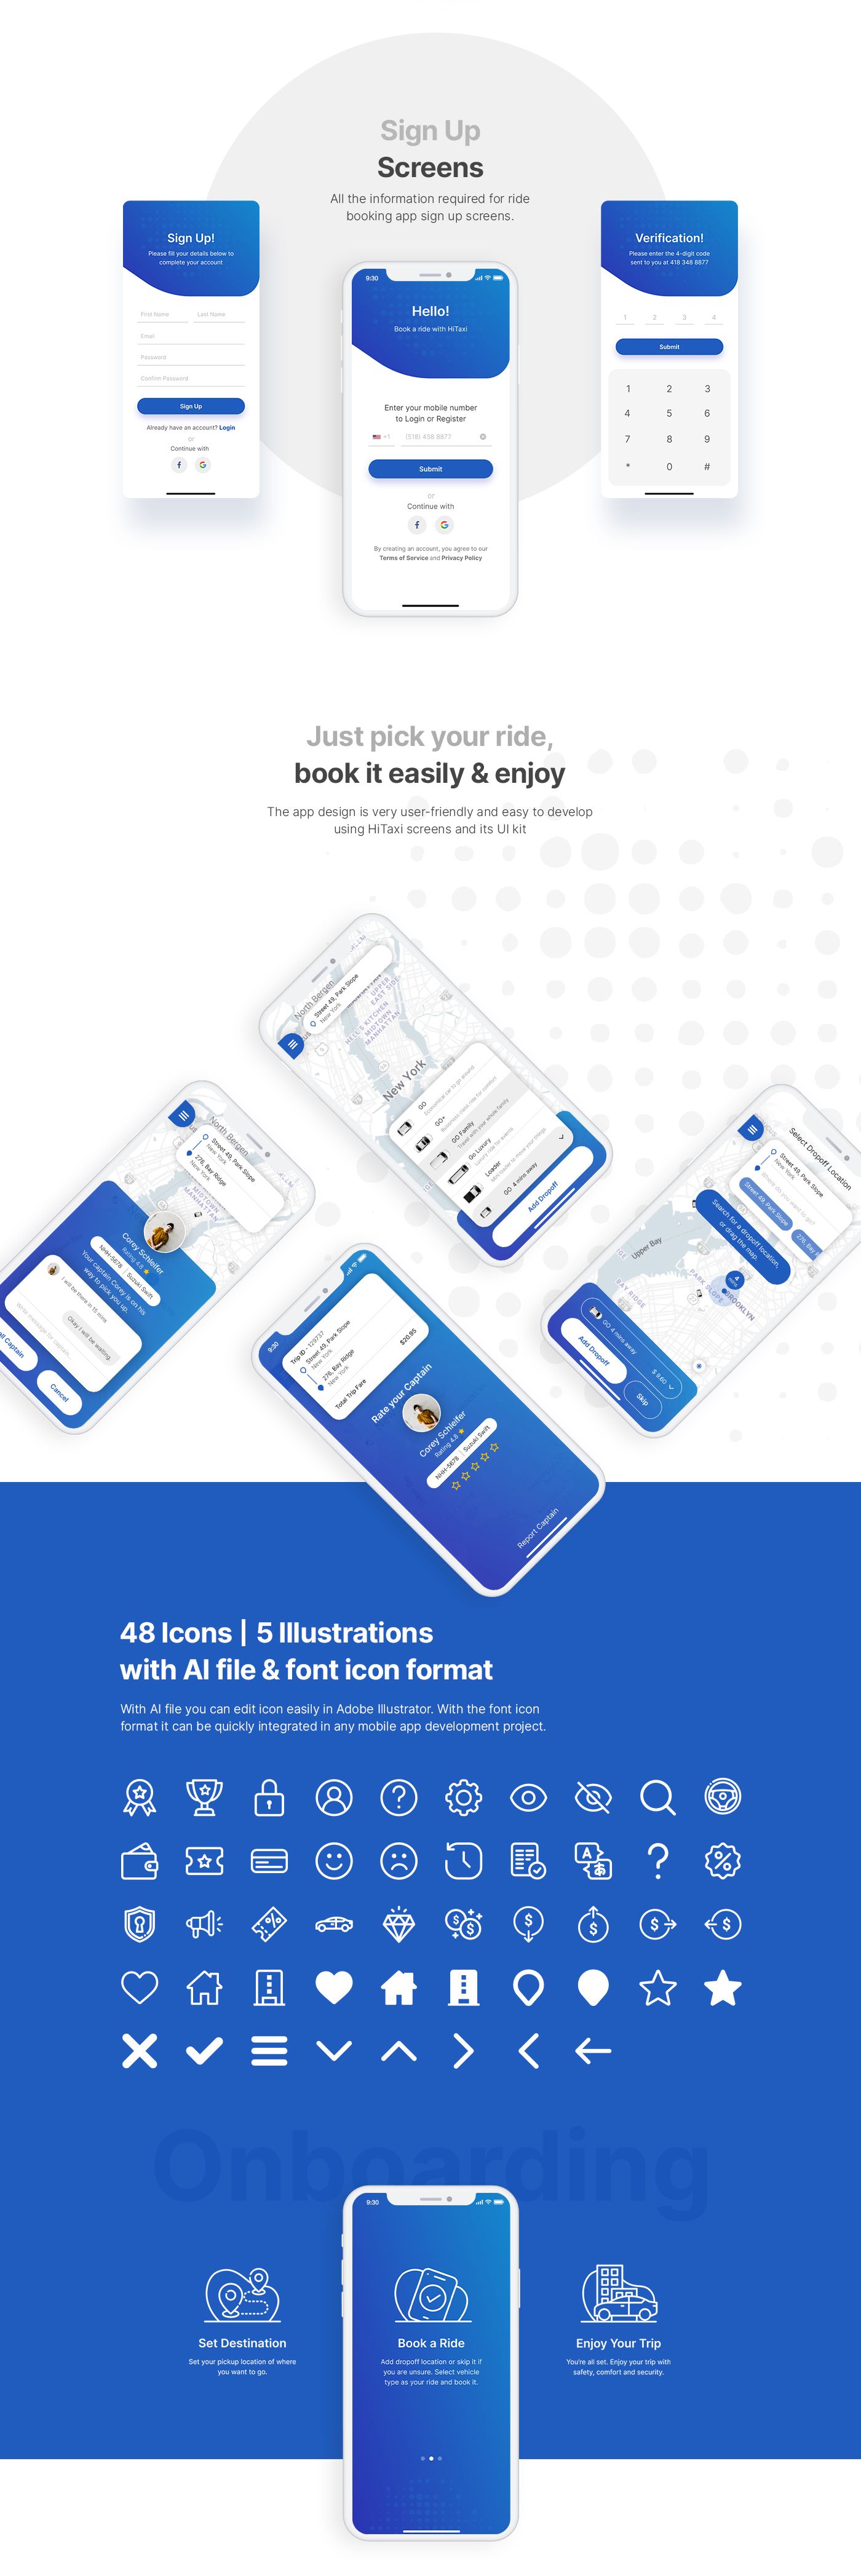 HiTaxi - Adobe XD UI Kit for Mobile App - 2